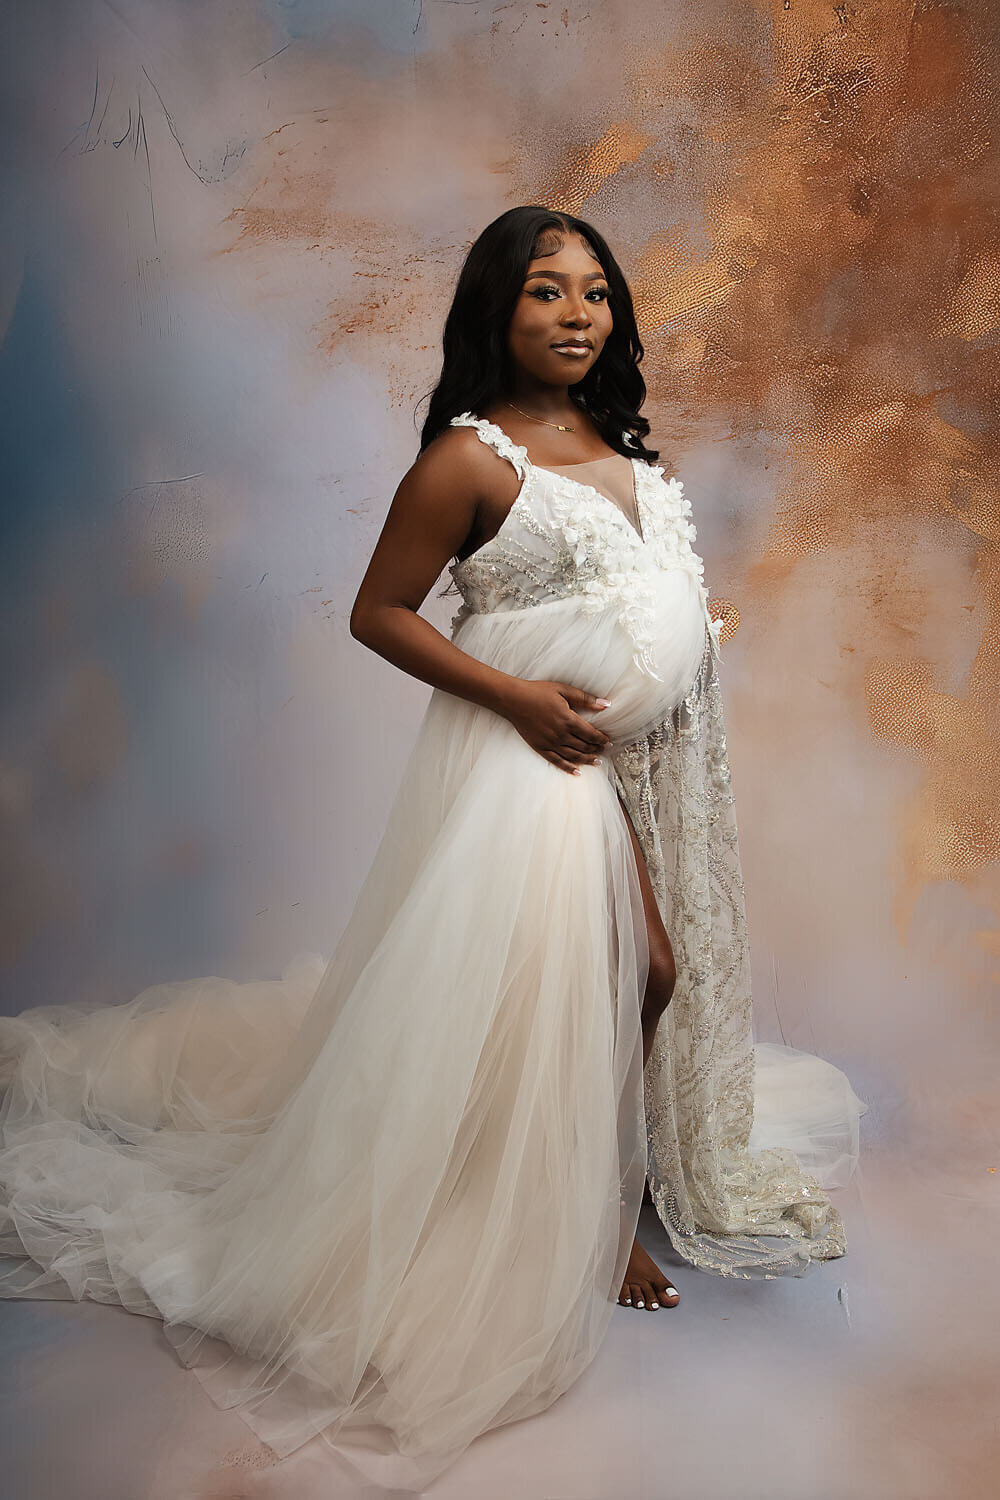 Baton Rouge Maternity Photographer26